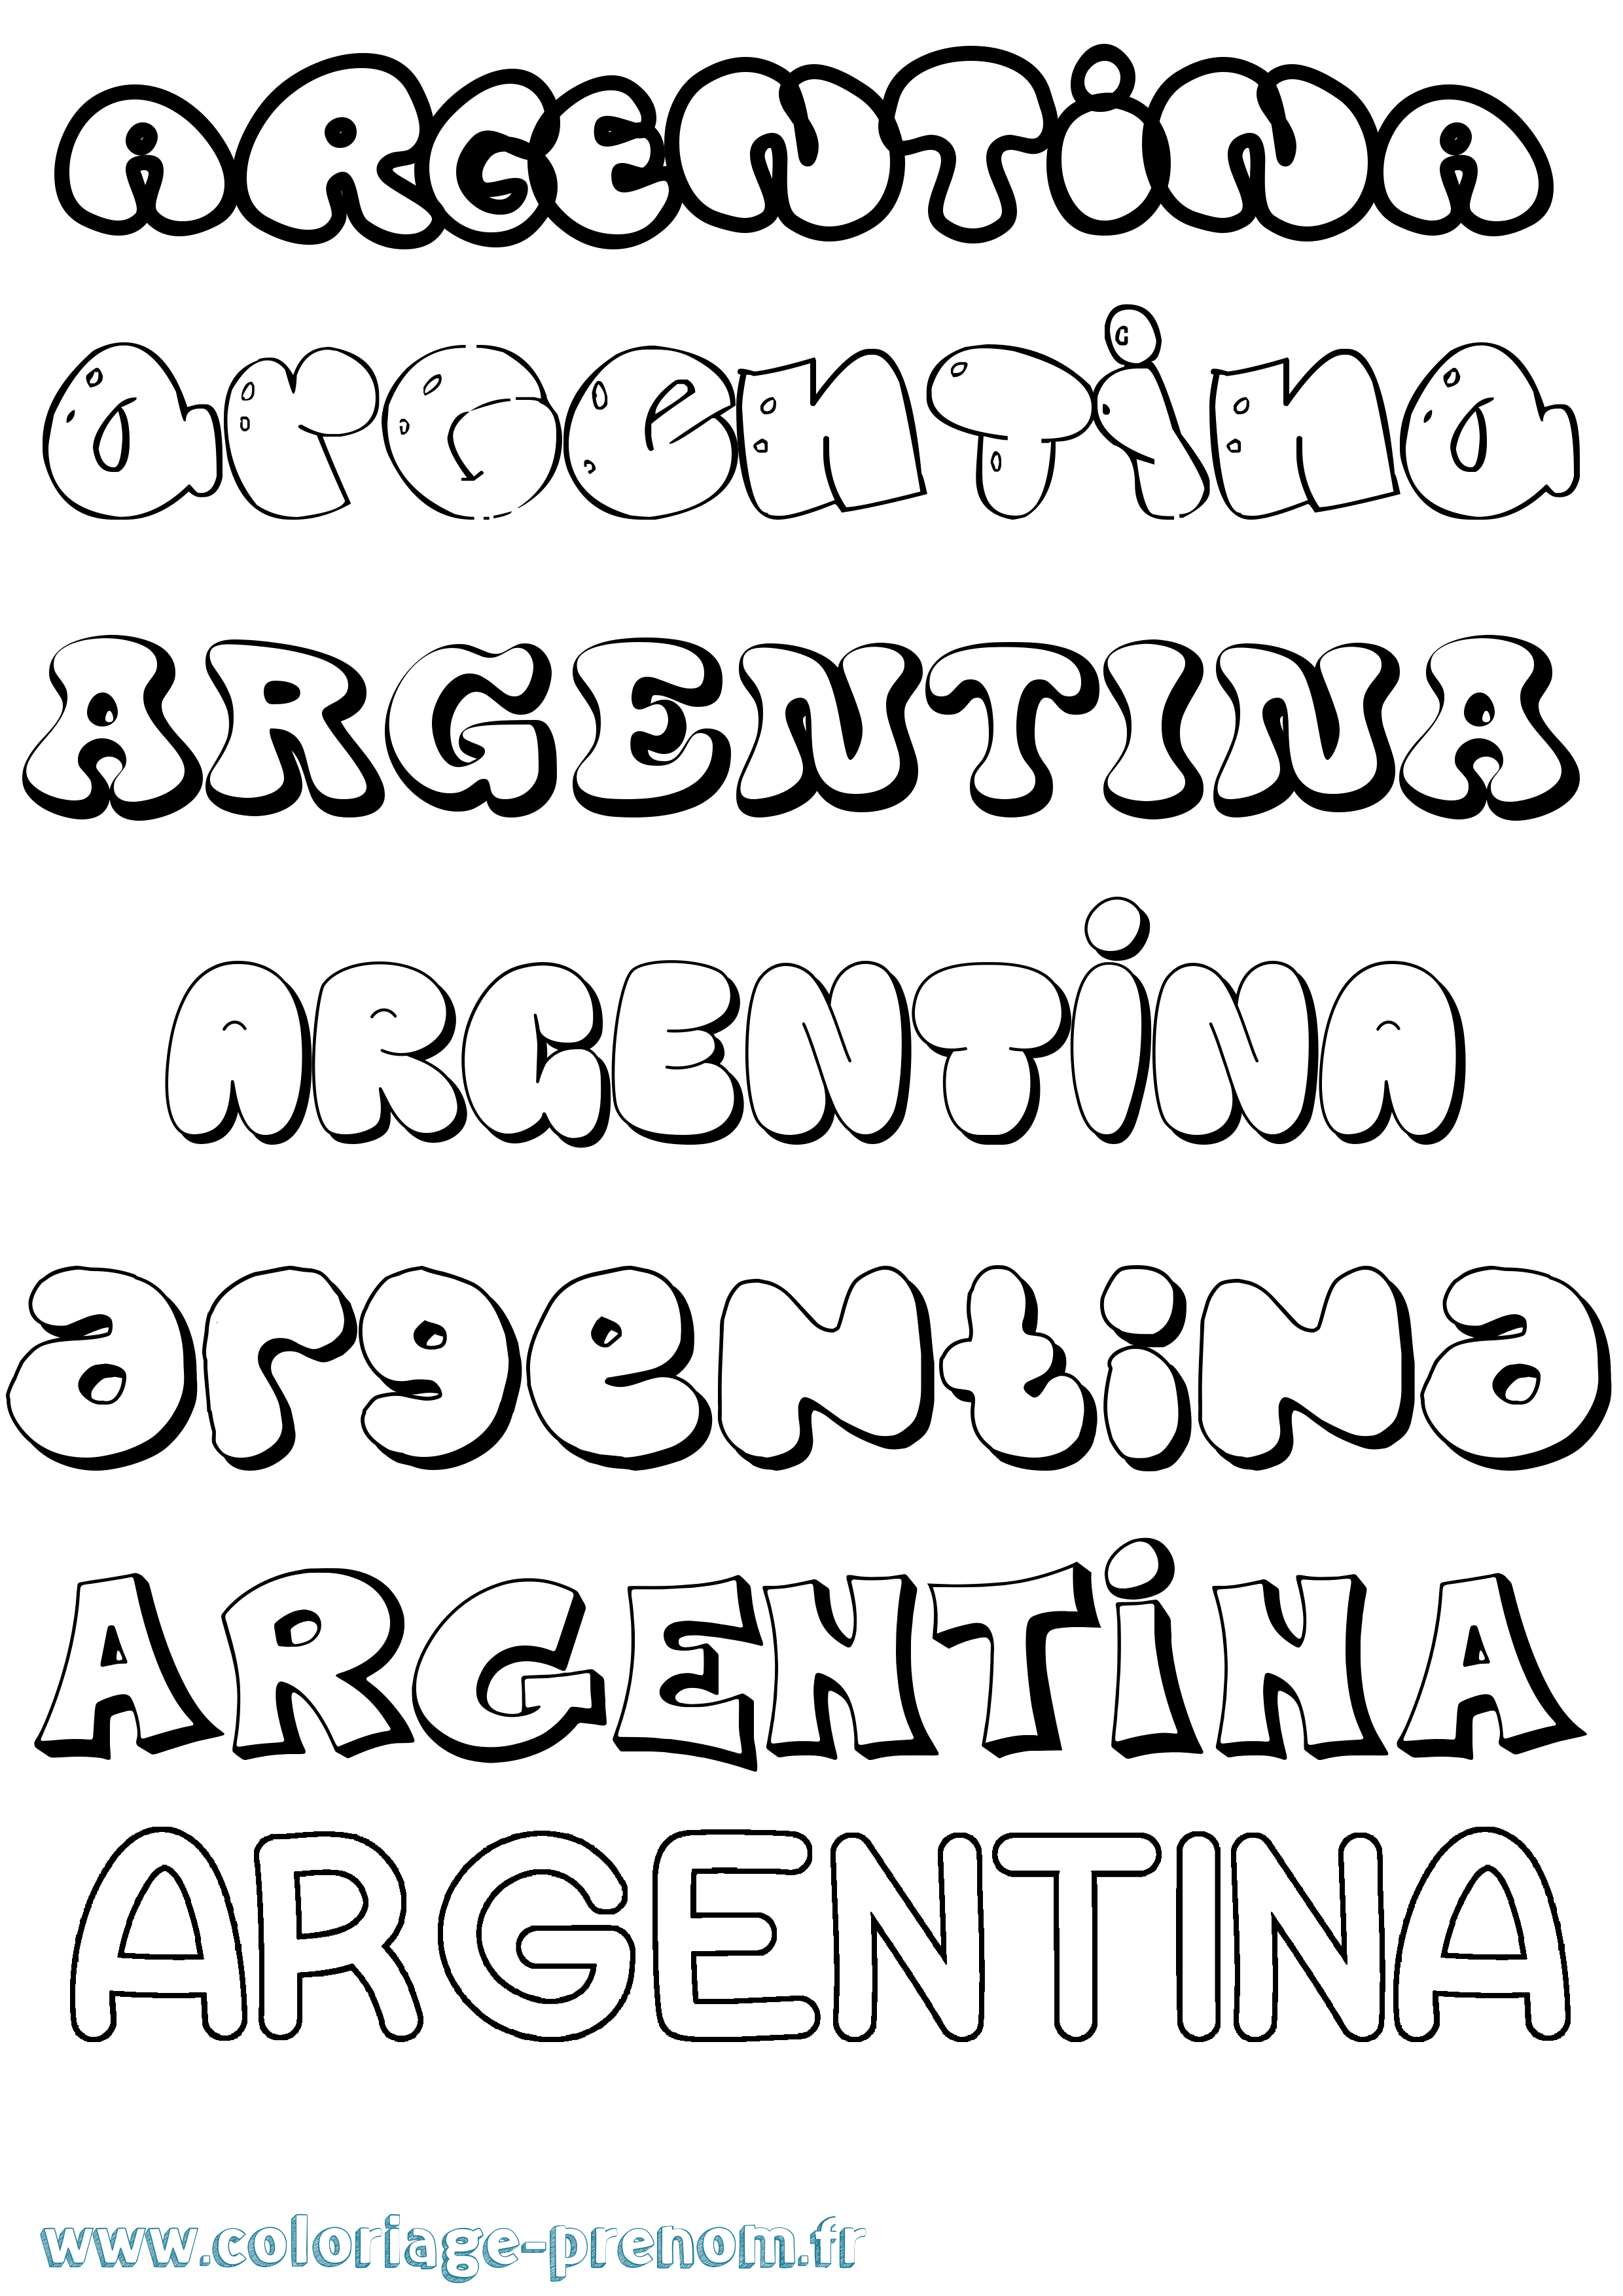 Coloriage prénom Argentina Bubble